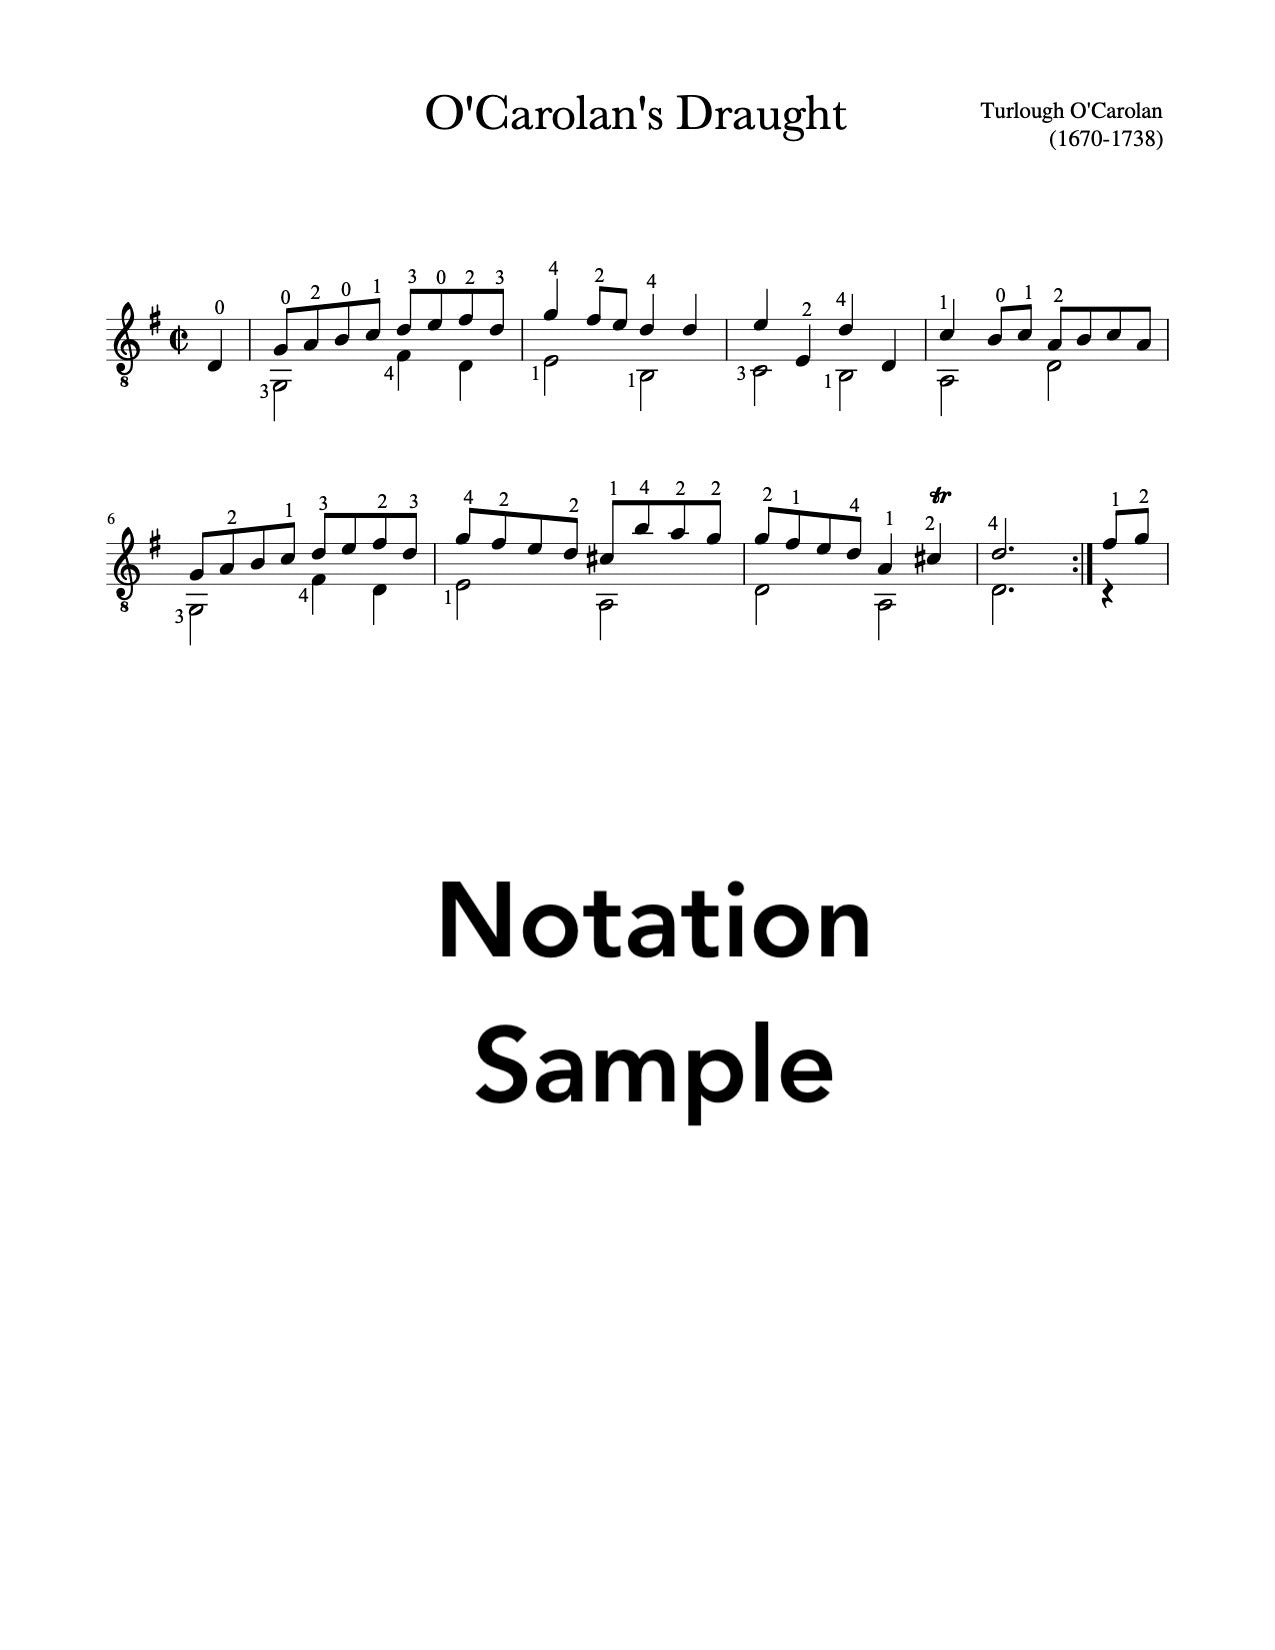 Easy Celtic Guitar Volume 2 - Notation Sample